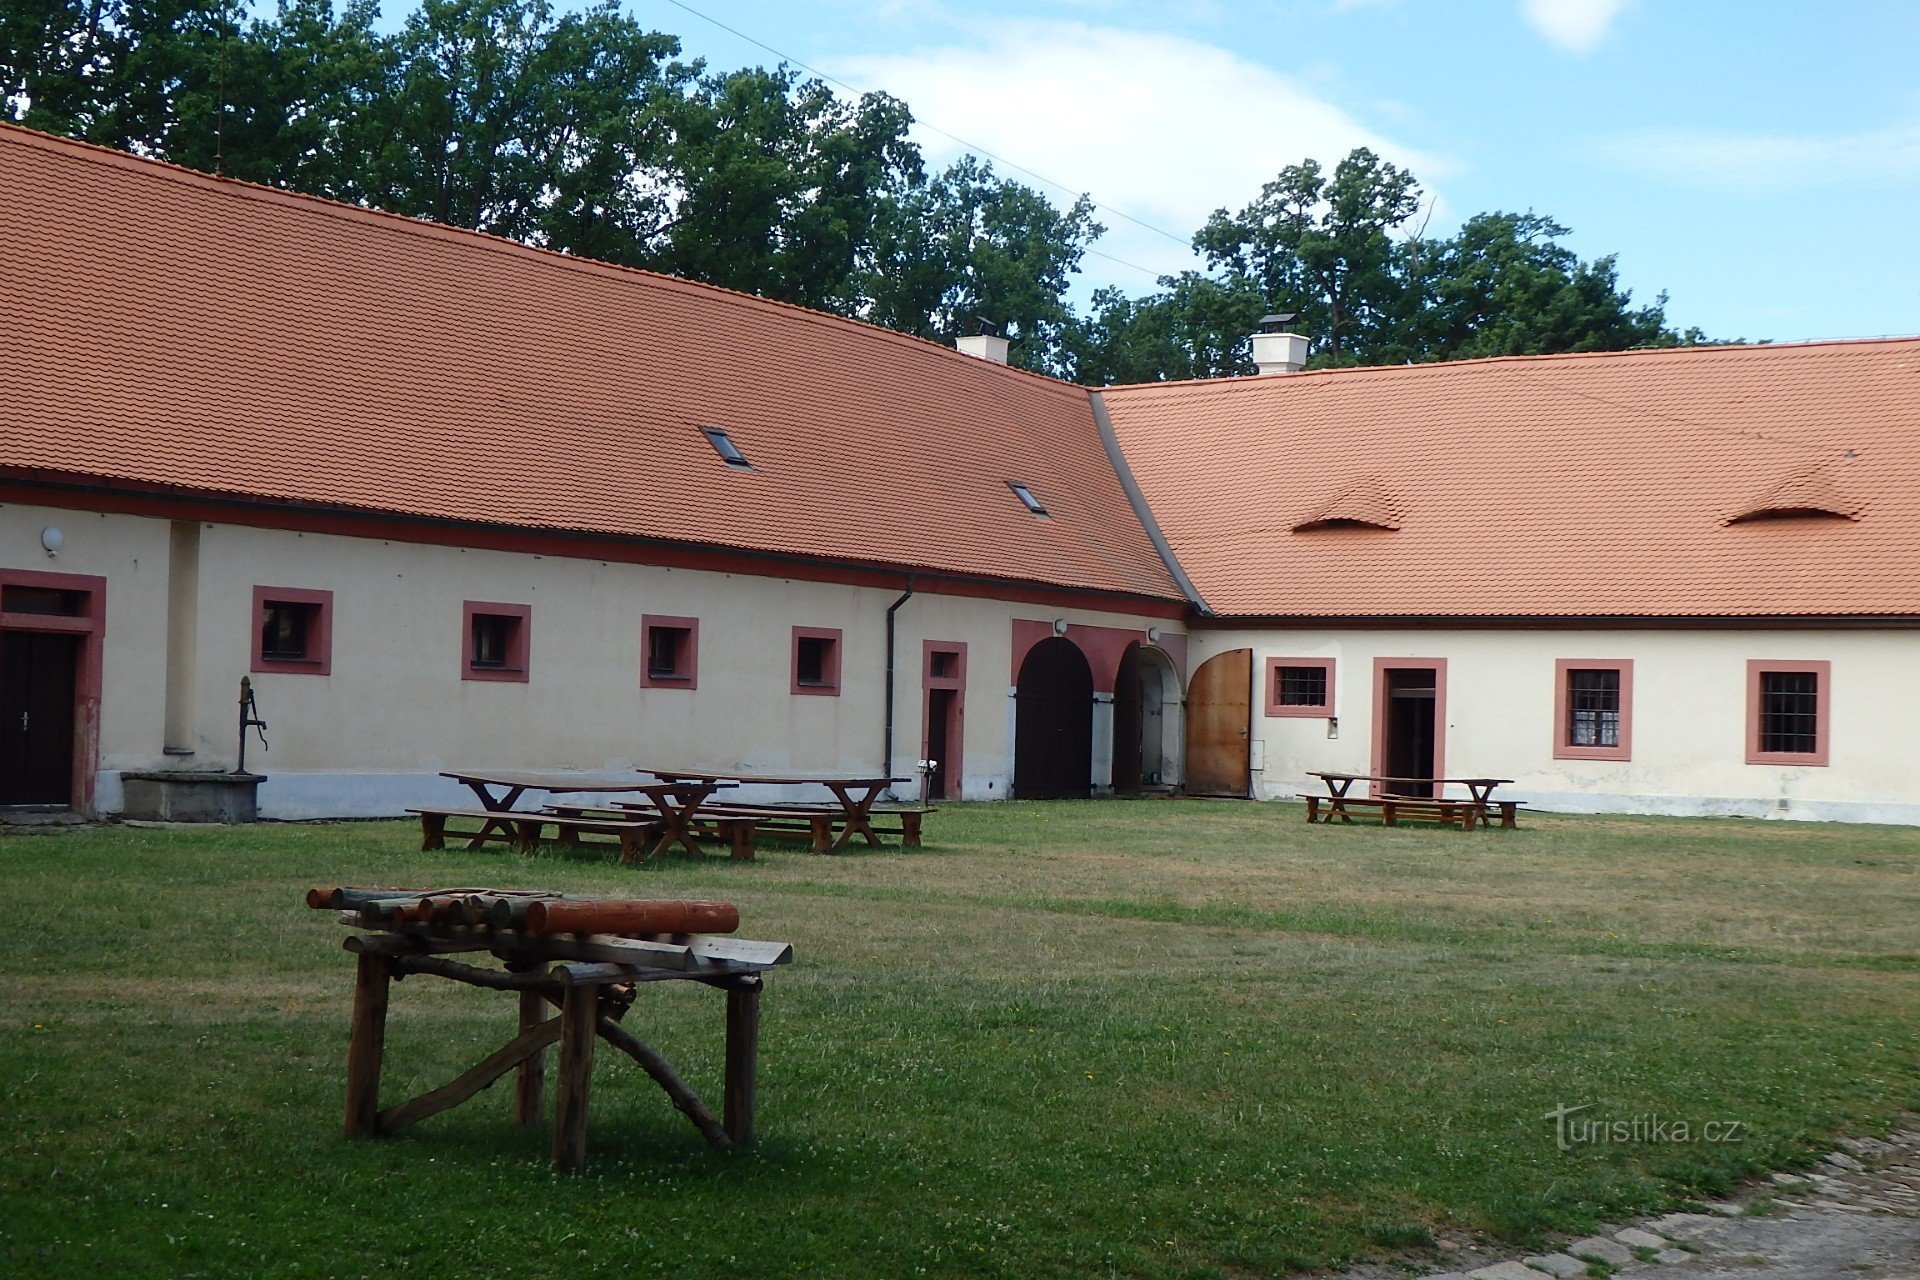 Hluboká nad Vltavou: Ohrada vadászház és állatkert